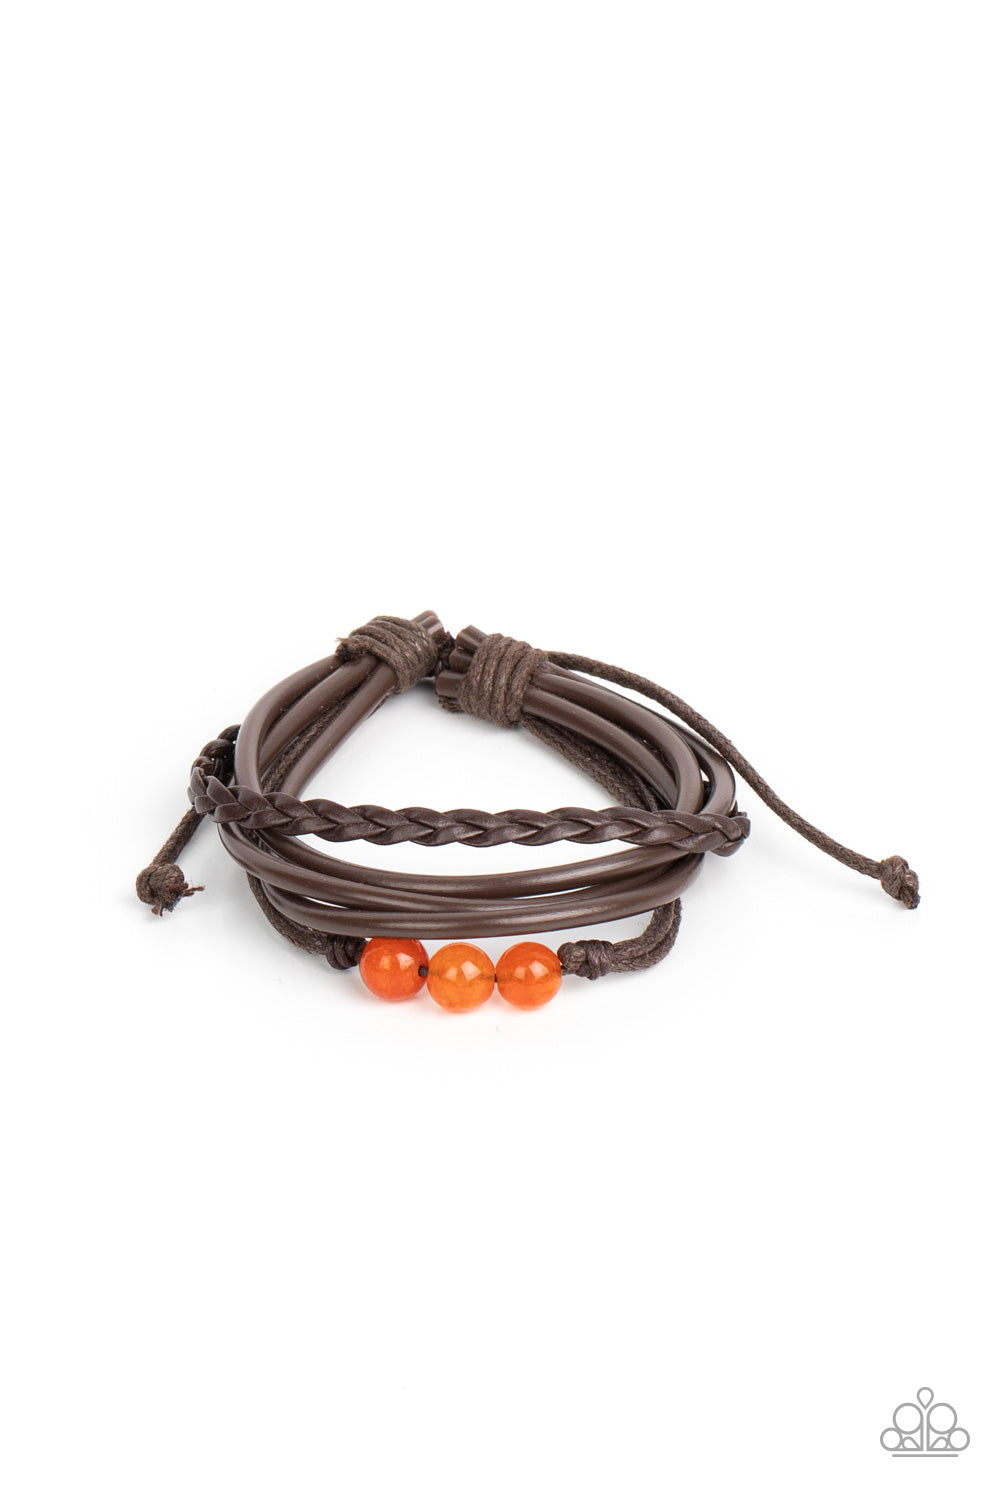 Rest Easy - Orange Bracelet